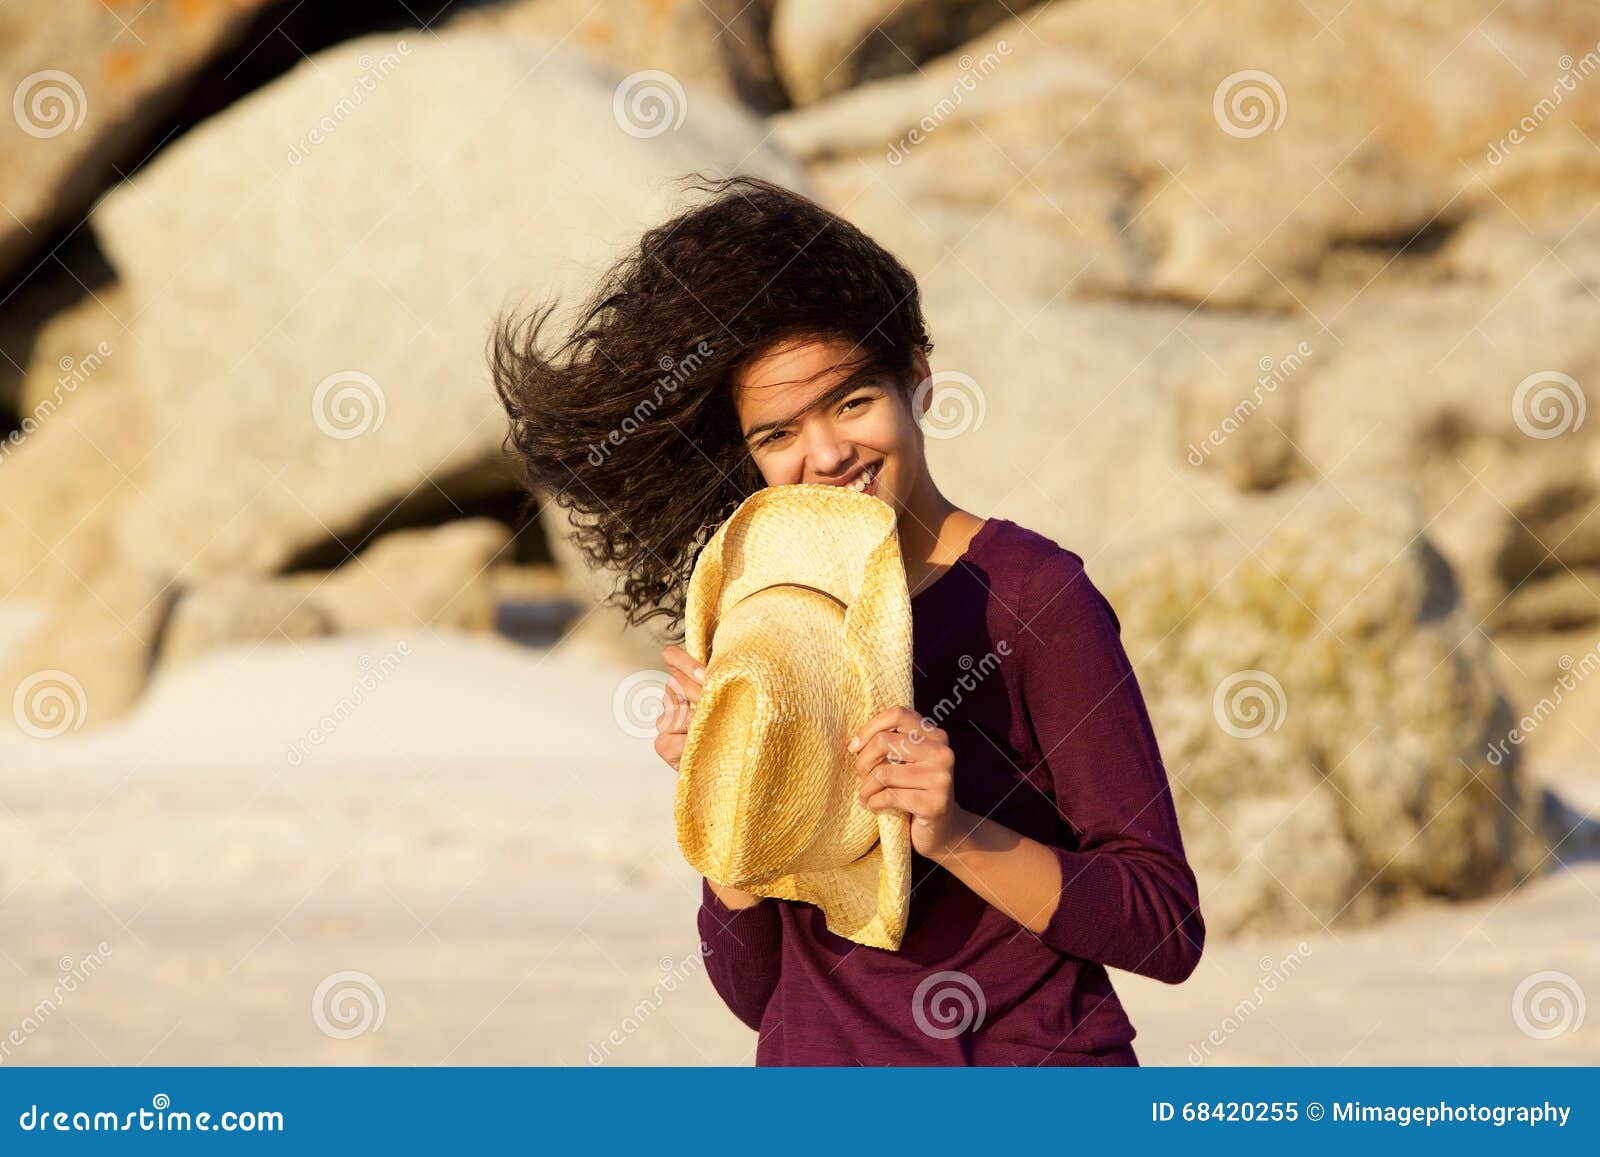 海滩的年轻深色的人在海微笑 库存图片. 图片 包括有 愉快, 户外, 背包, 查找, 设计, 火箭筒, 偶然 - 53898227